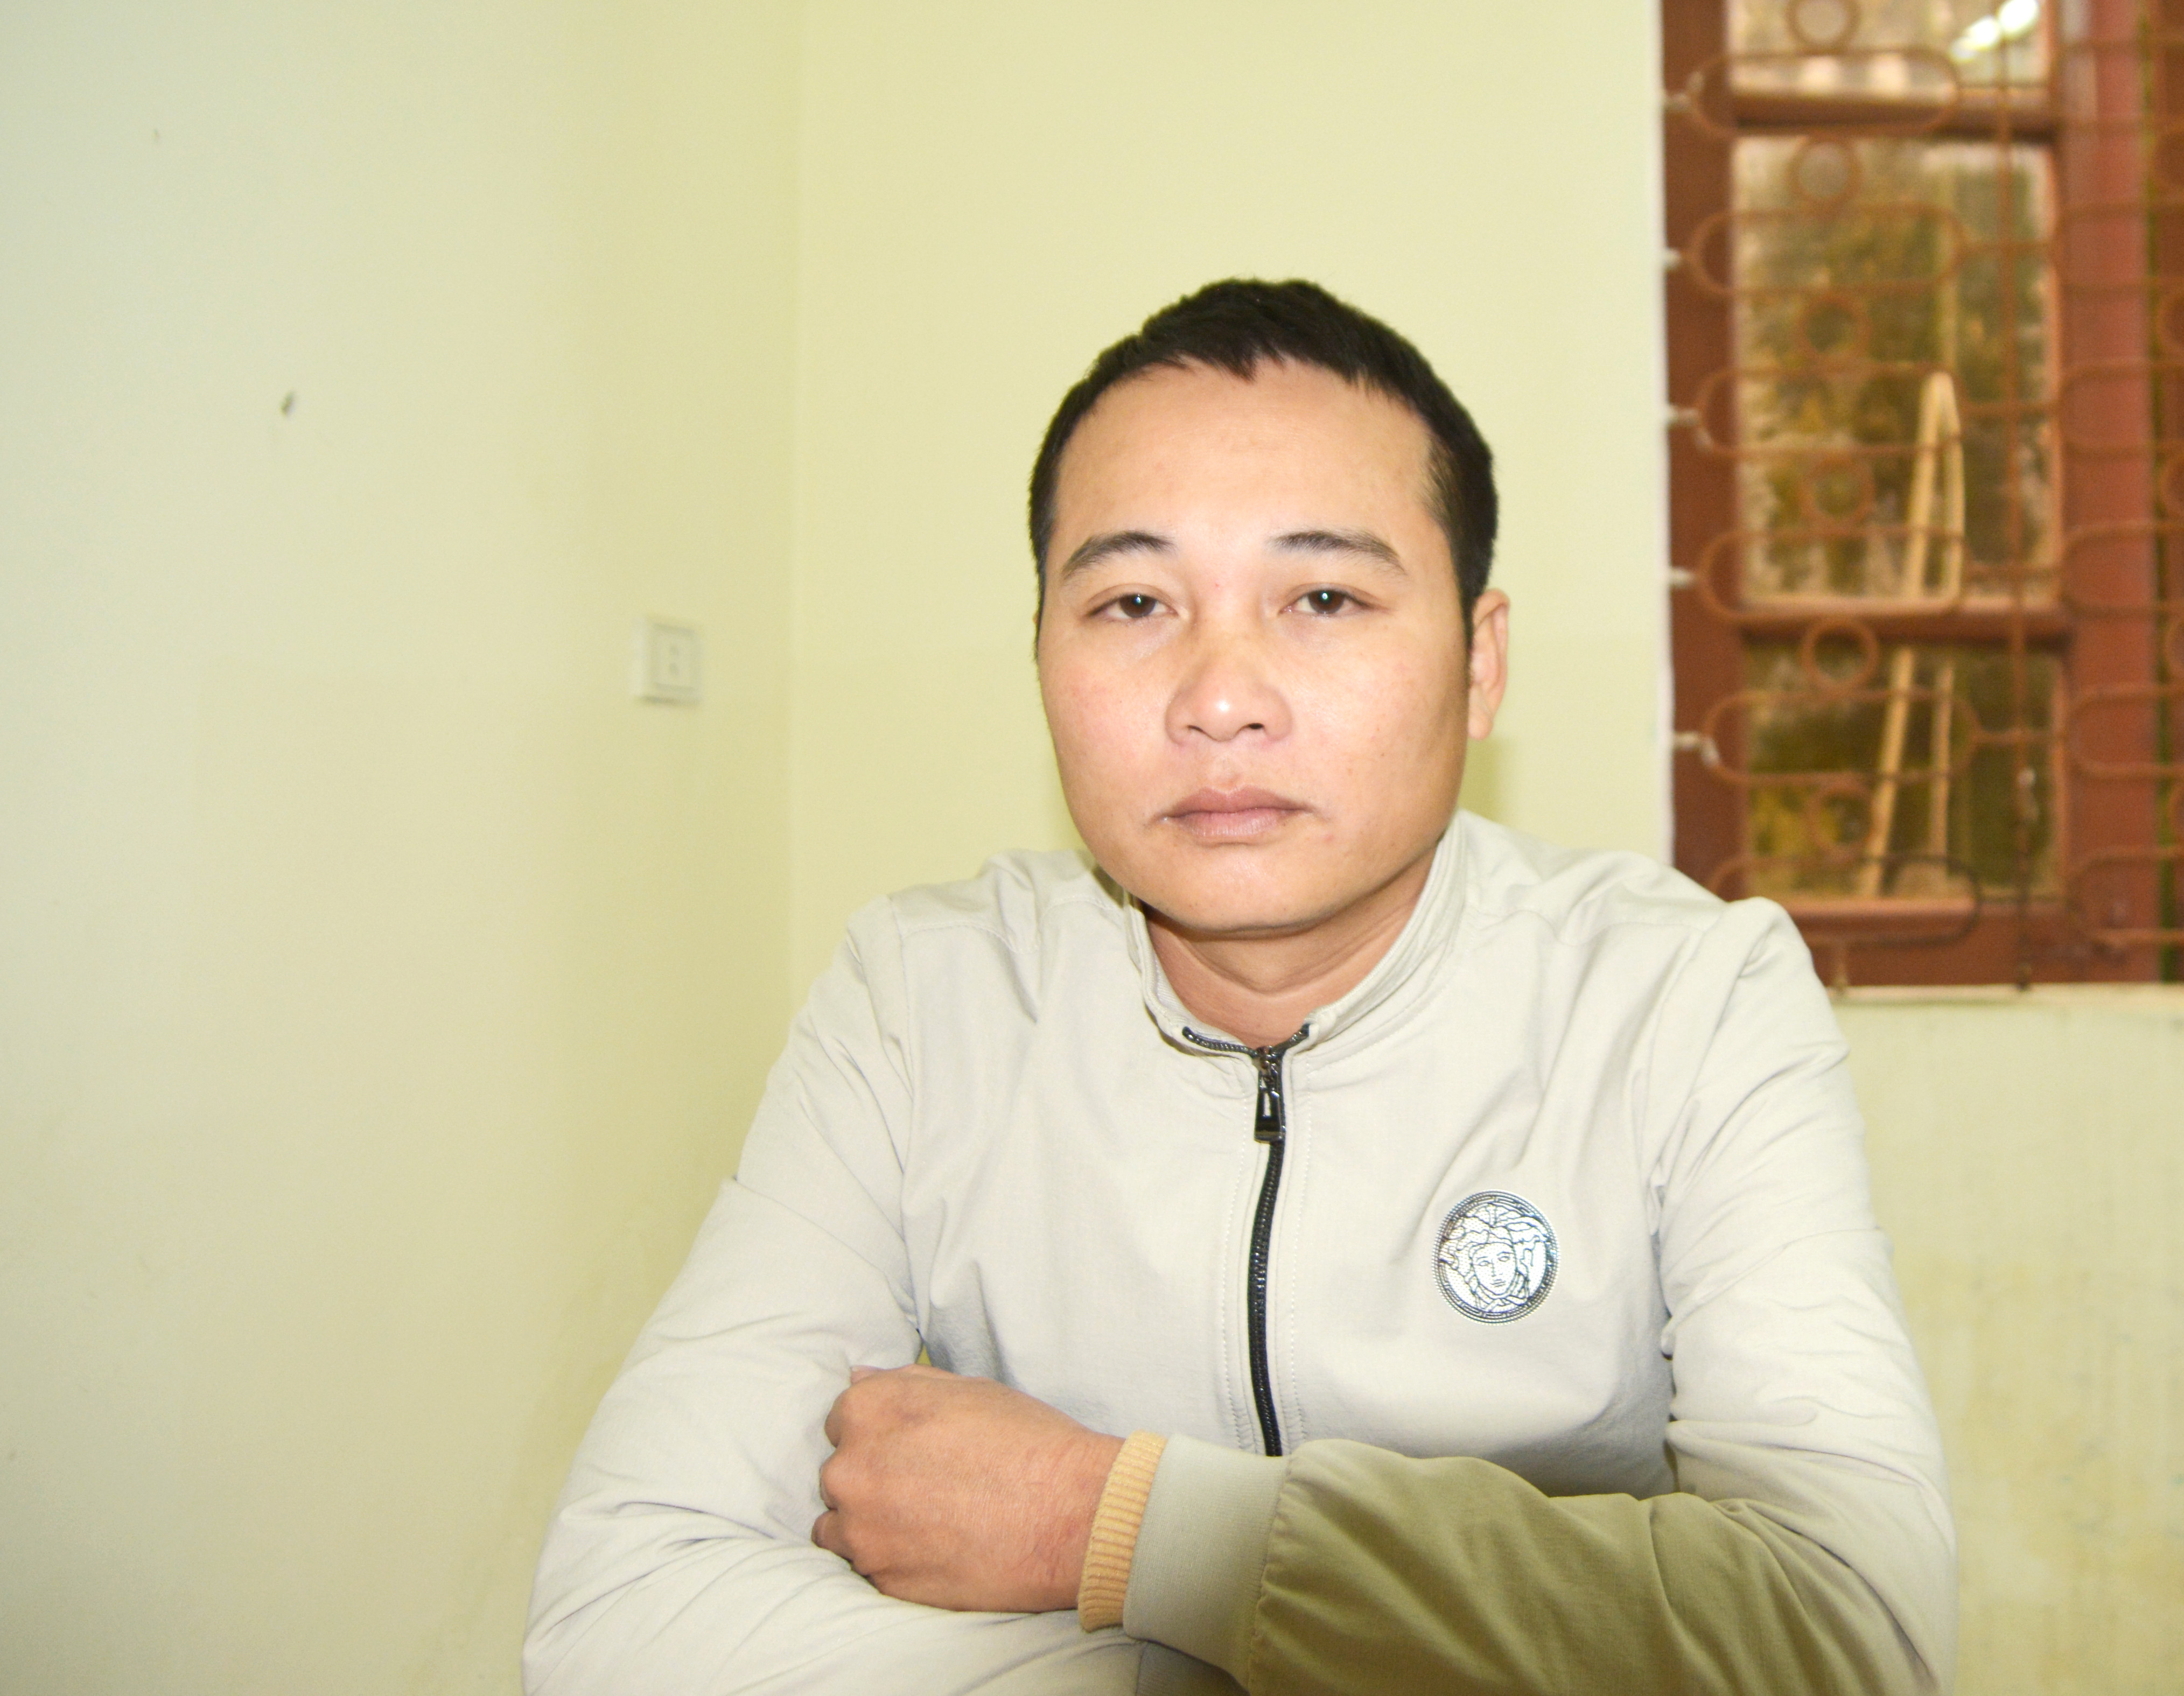 Nguyễn Trung Tính, trú tại xã Nghi Đức, TP Vinh là đối tượng cho vay nặng lãi vừa bị phòng Cảnh sát hình sự bắt giữ. Ảnh: P.V